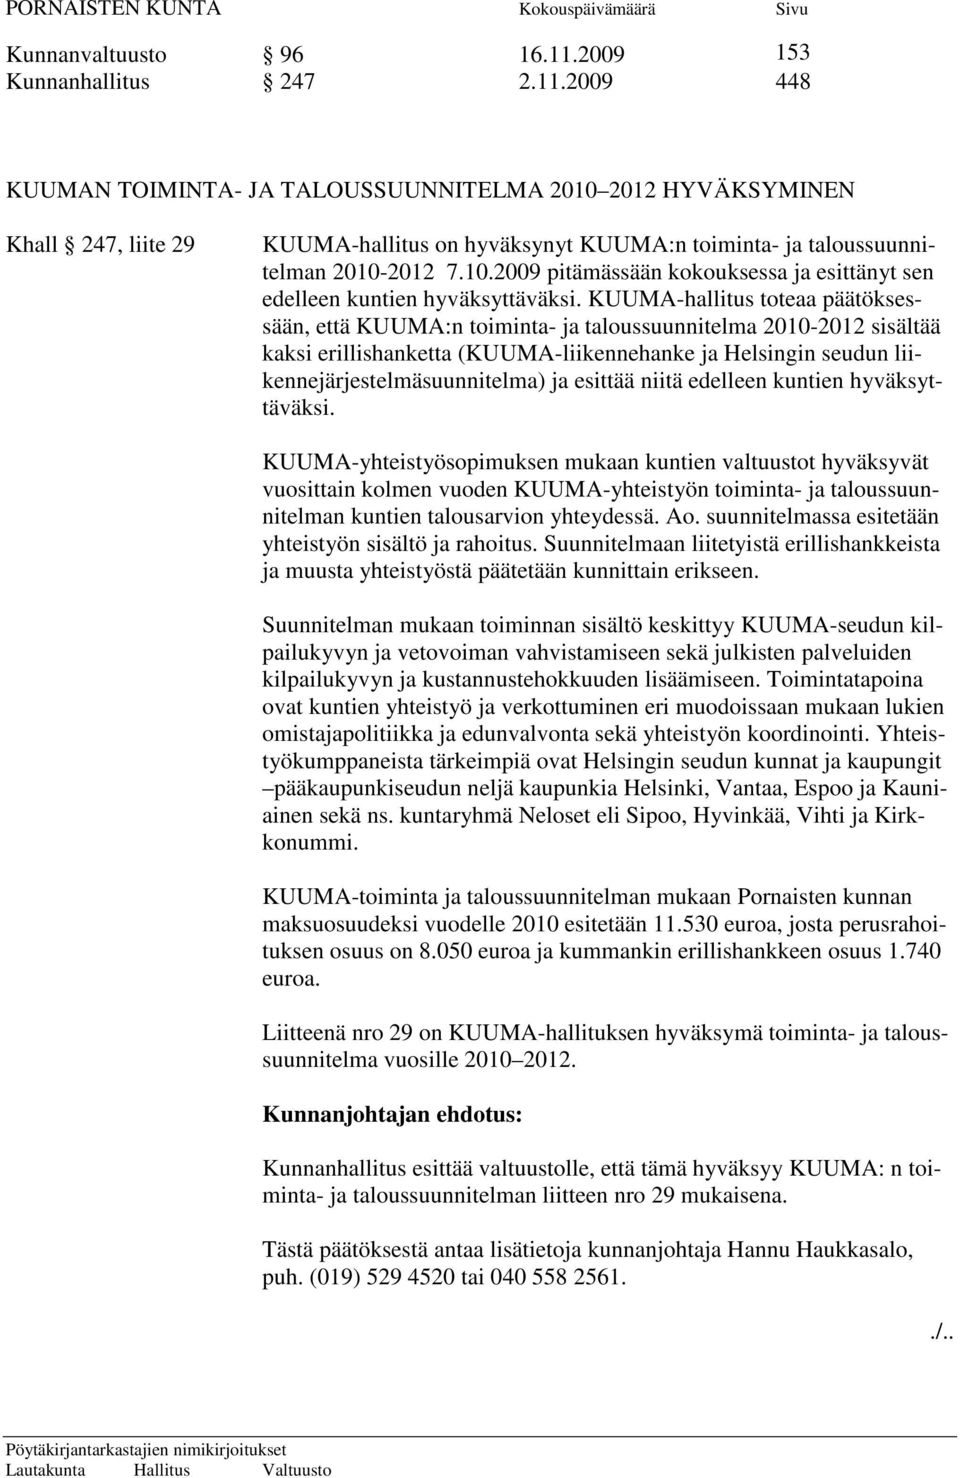 KUUMA-hallitus toteaa päätöksessään, että KUUMA:n toiminta- ja taloussuunnitelma 2010-2012 sisältää kaksi erillishanketta (KUUMA-liikennehanke ja Helsingin seudun liikennejärjestelmäsuunnitelma) ja